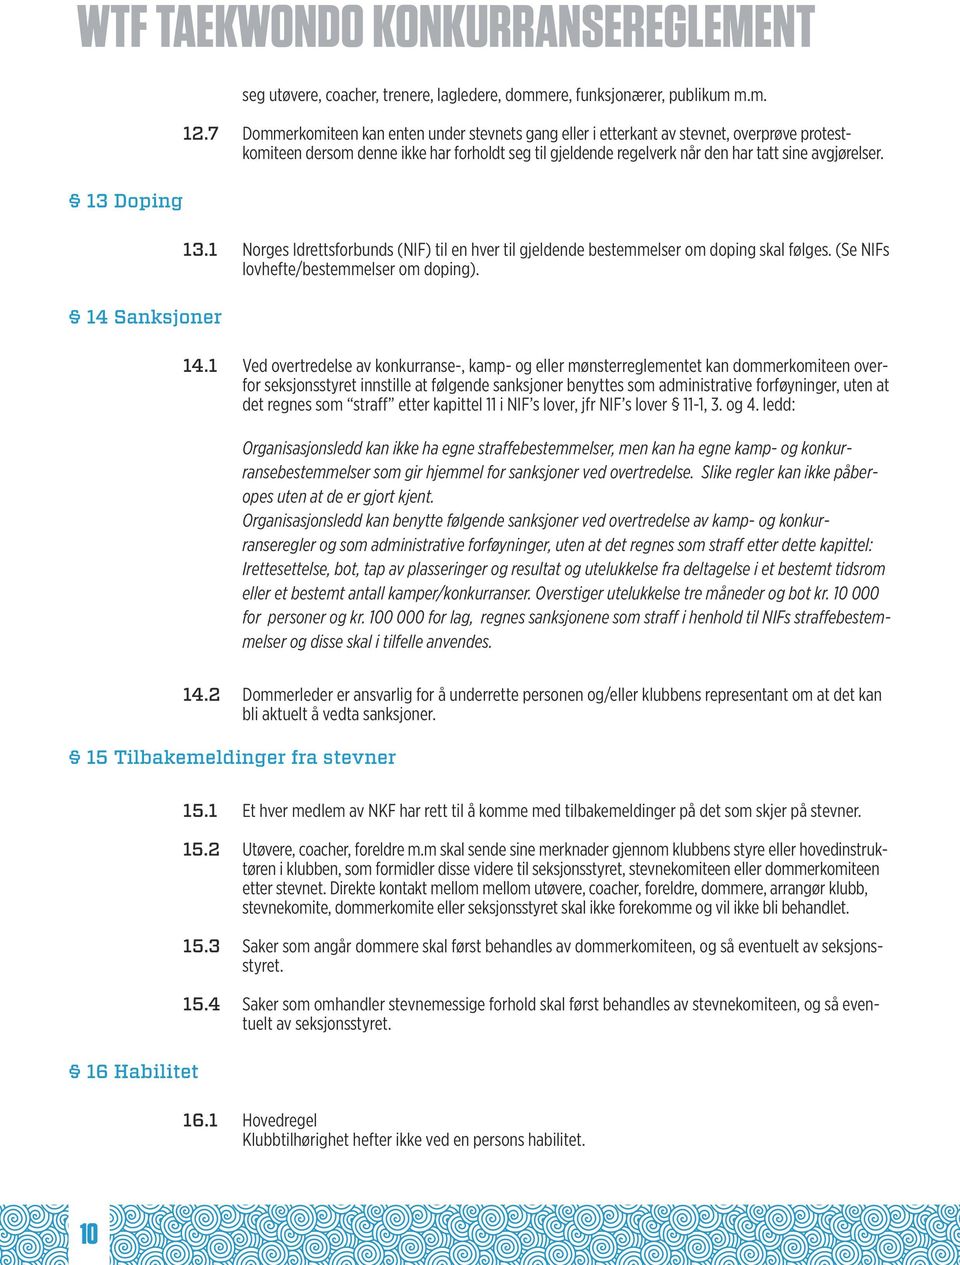 1 Norges Idrettsforbunds (NIF) til en hver til gjeldende bestemmelser om doping skal følges. (Se NIFs lovhefte/bestemmelser om doping). 14.